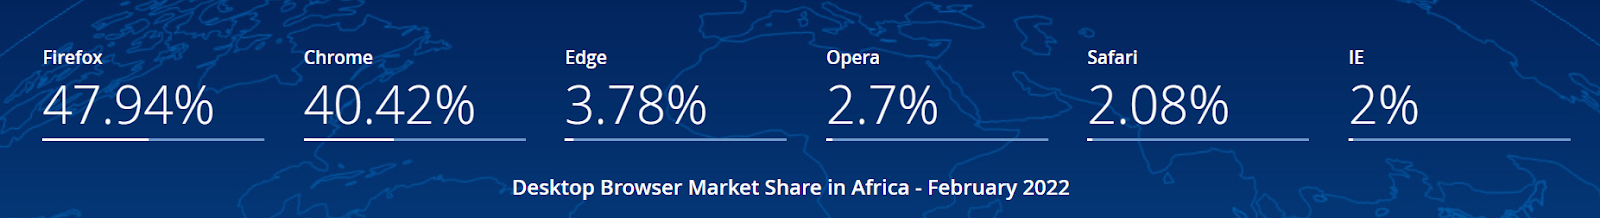 [https://gs.statcounter.com/browser-market-share/desktop/africa#monthly-202102-202202-bar](https://gs.statcounter.com/browser-market-share/desktop/africa#monthly-202102-202202-bar)